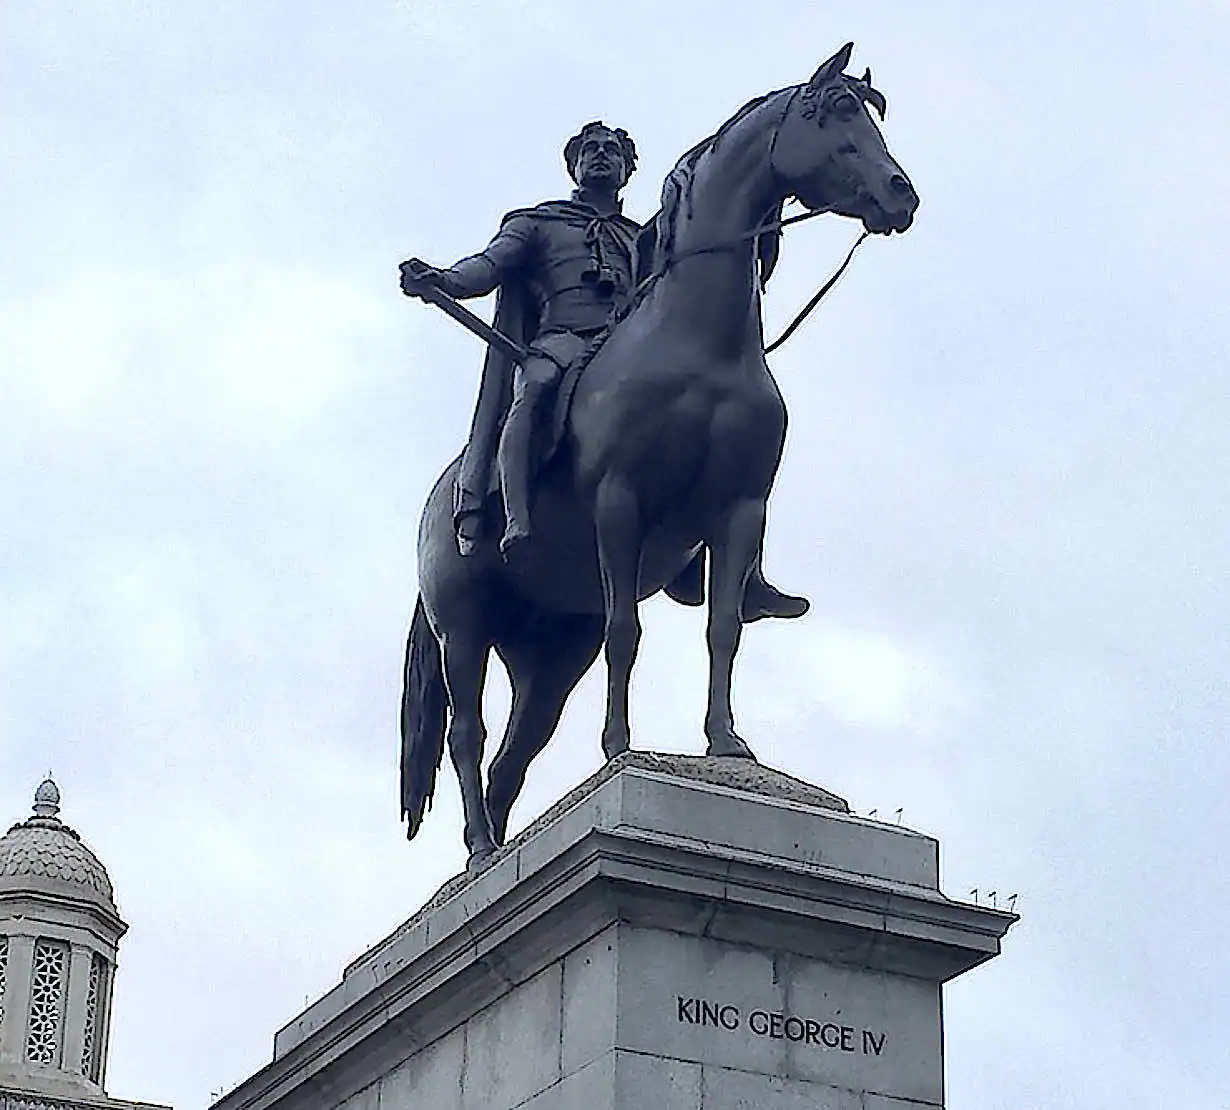 Statue of King George IV on horseback